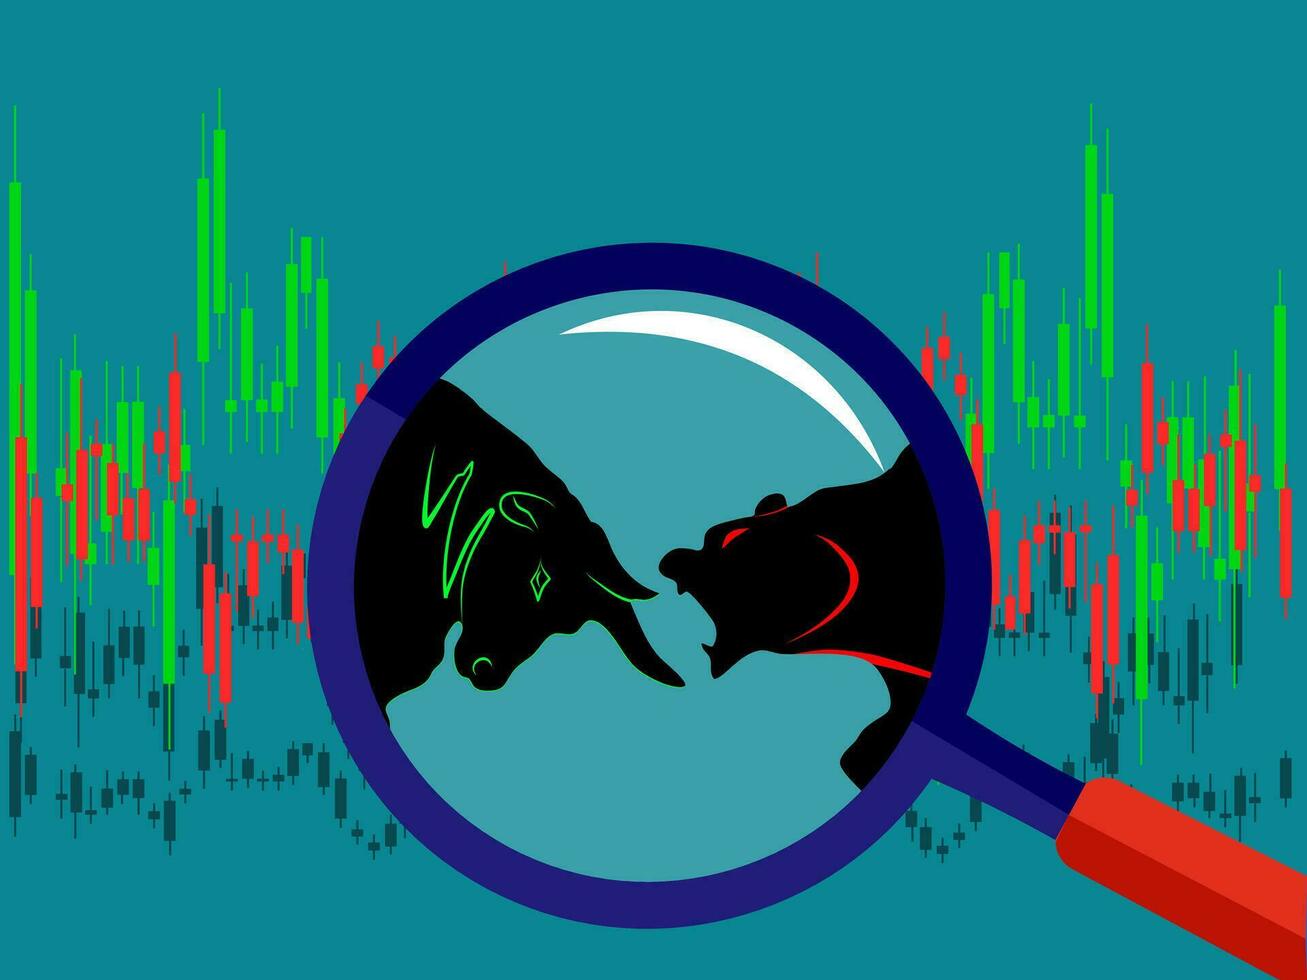 bull vs bear symbol of stock market trend isolate on background Illustration vector